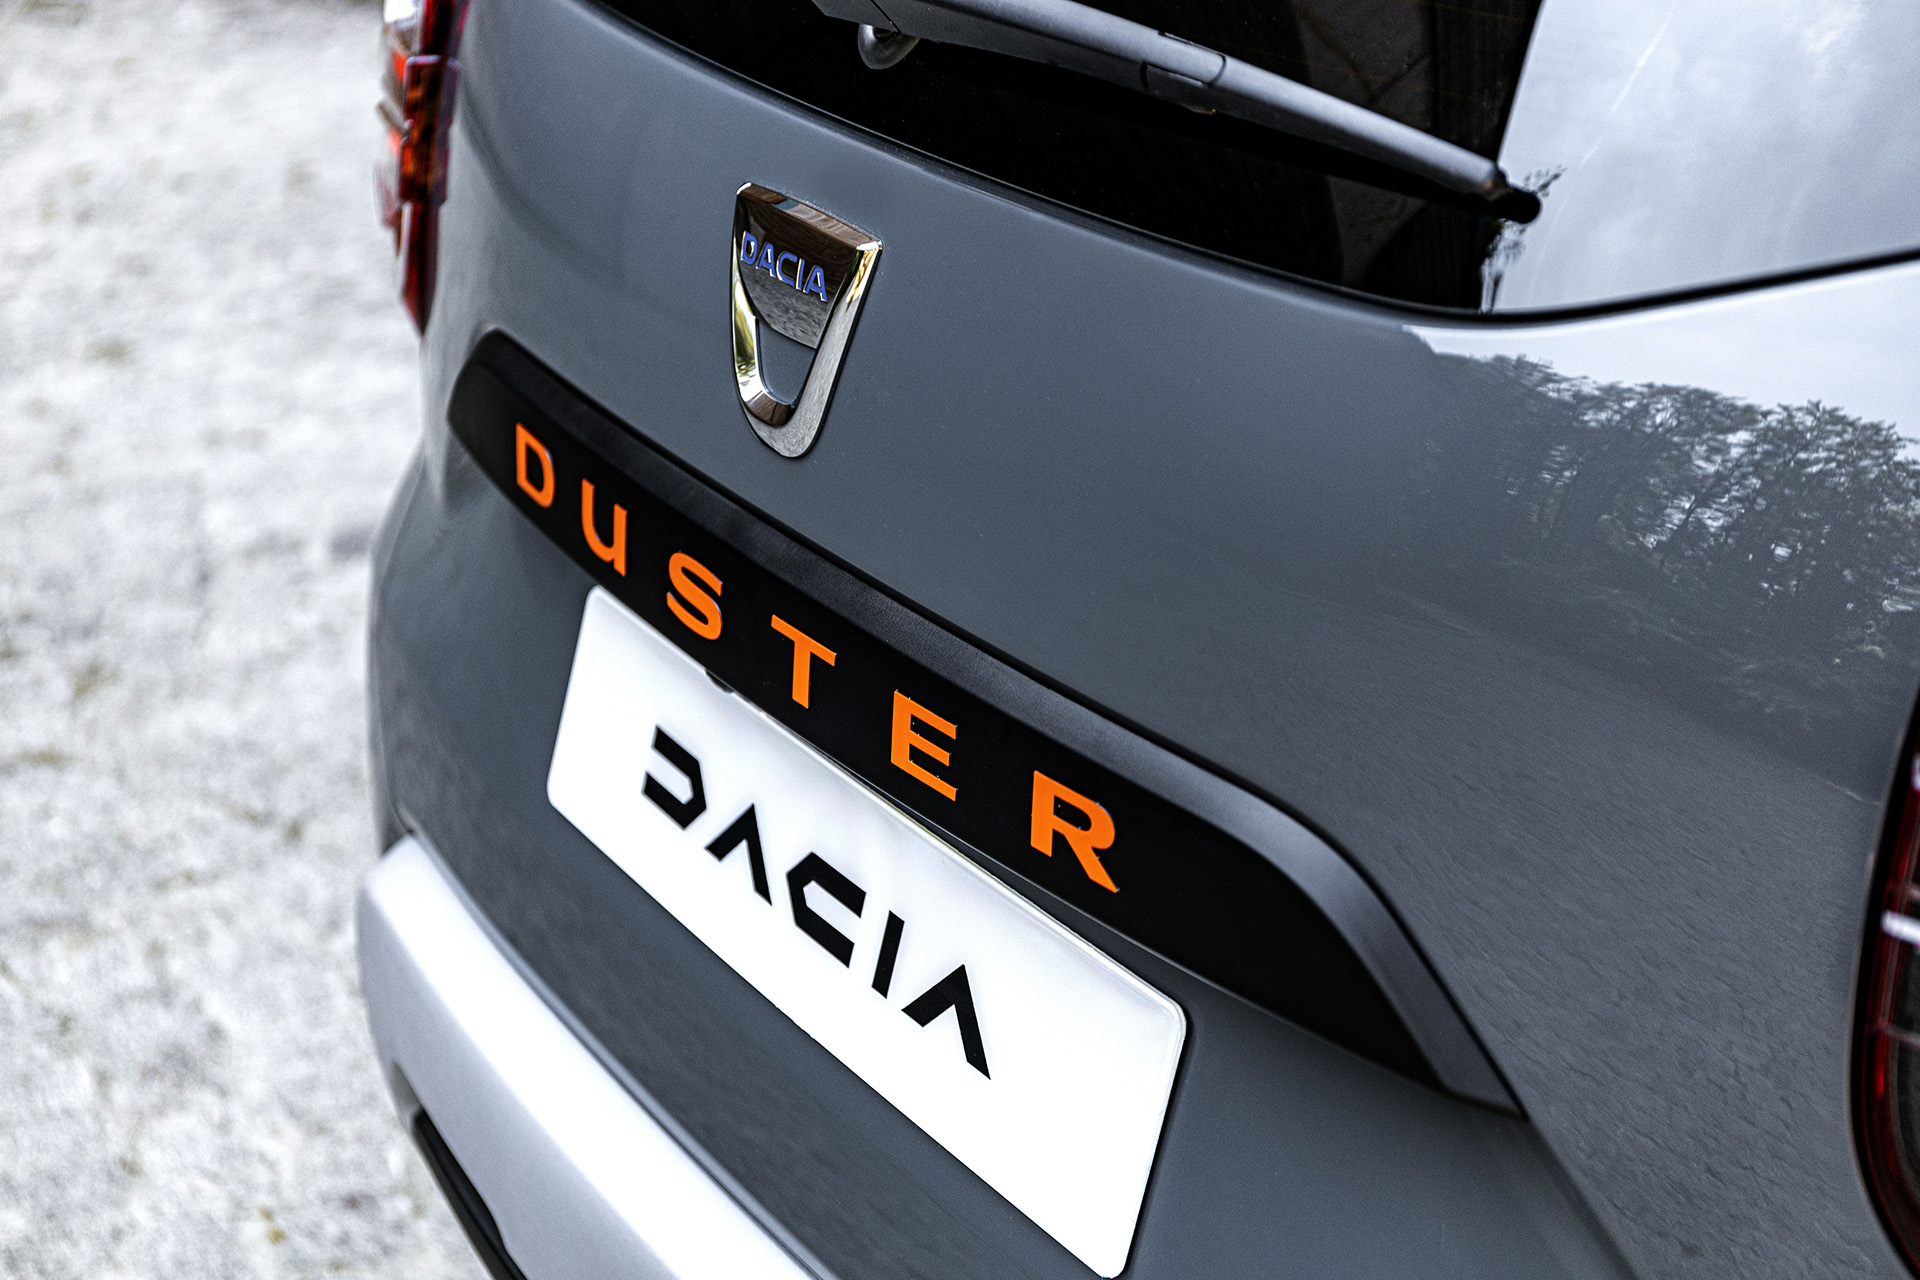  Dacia Duster prináša nový vrchol výbav, limitovanú edíciu Extreme